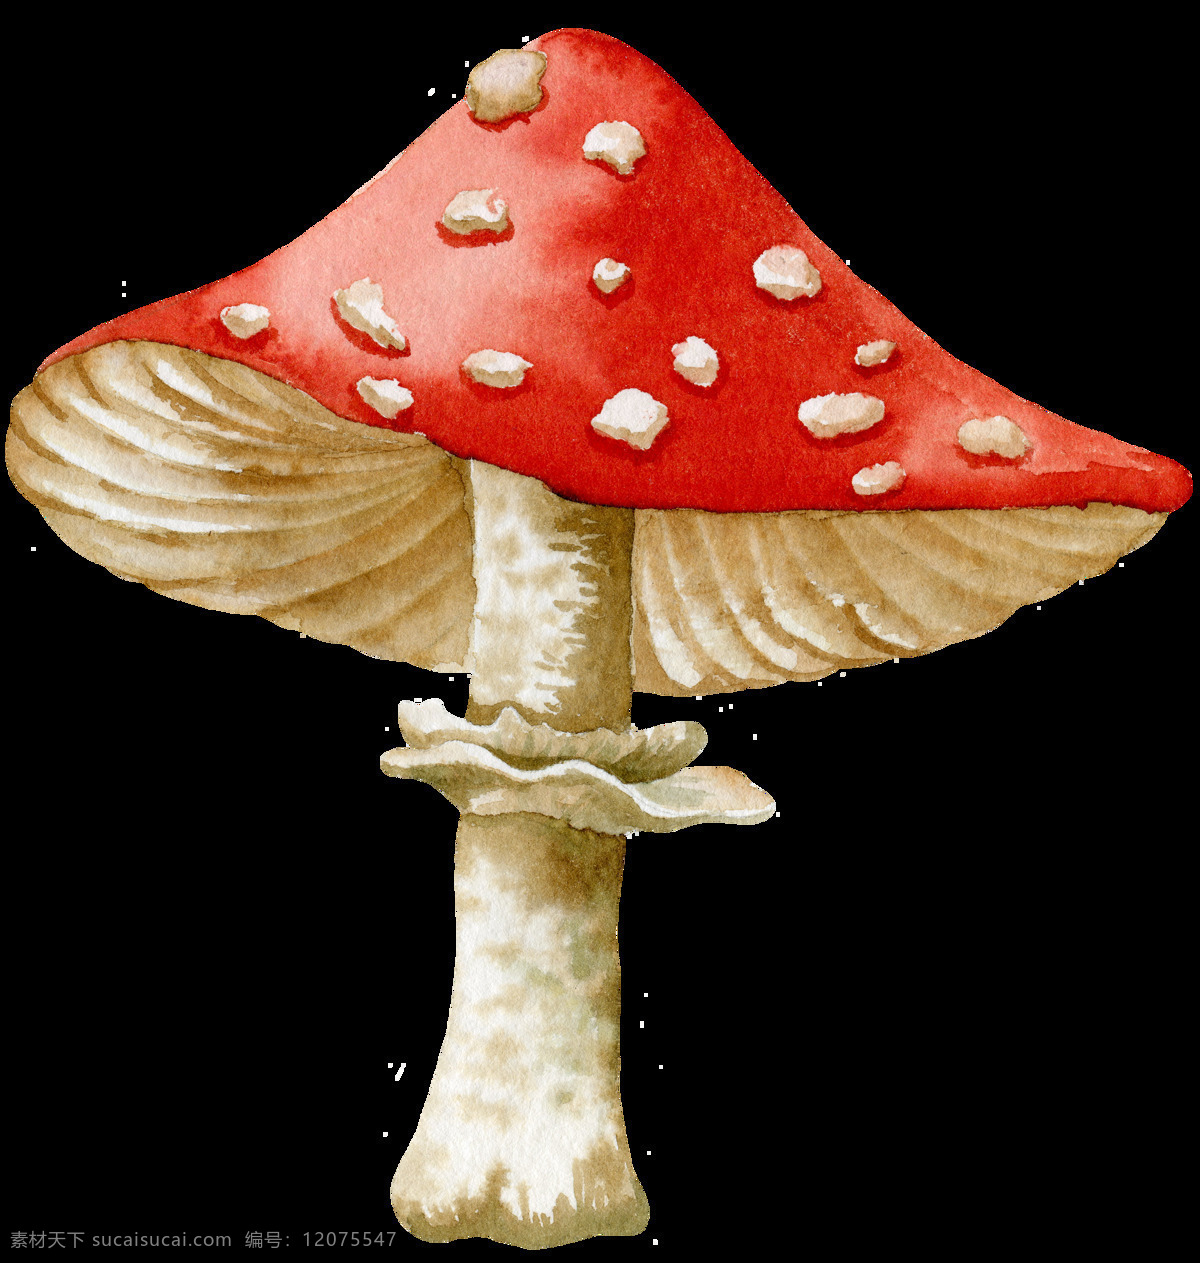 组 卡通 蘑菇 设计素材 植物 可爱 红色 黄色 野生菌 童话 伞状